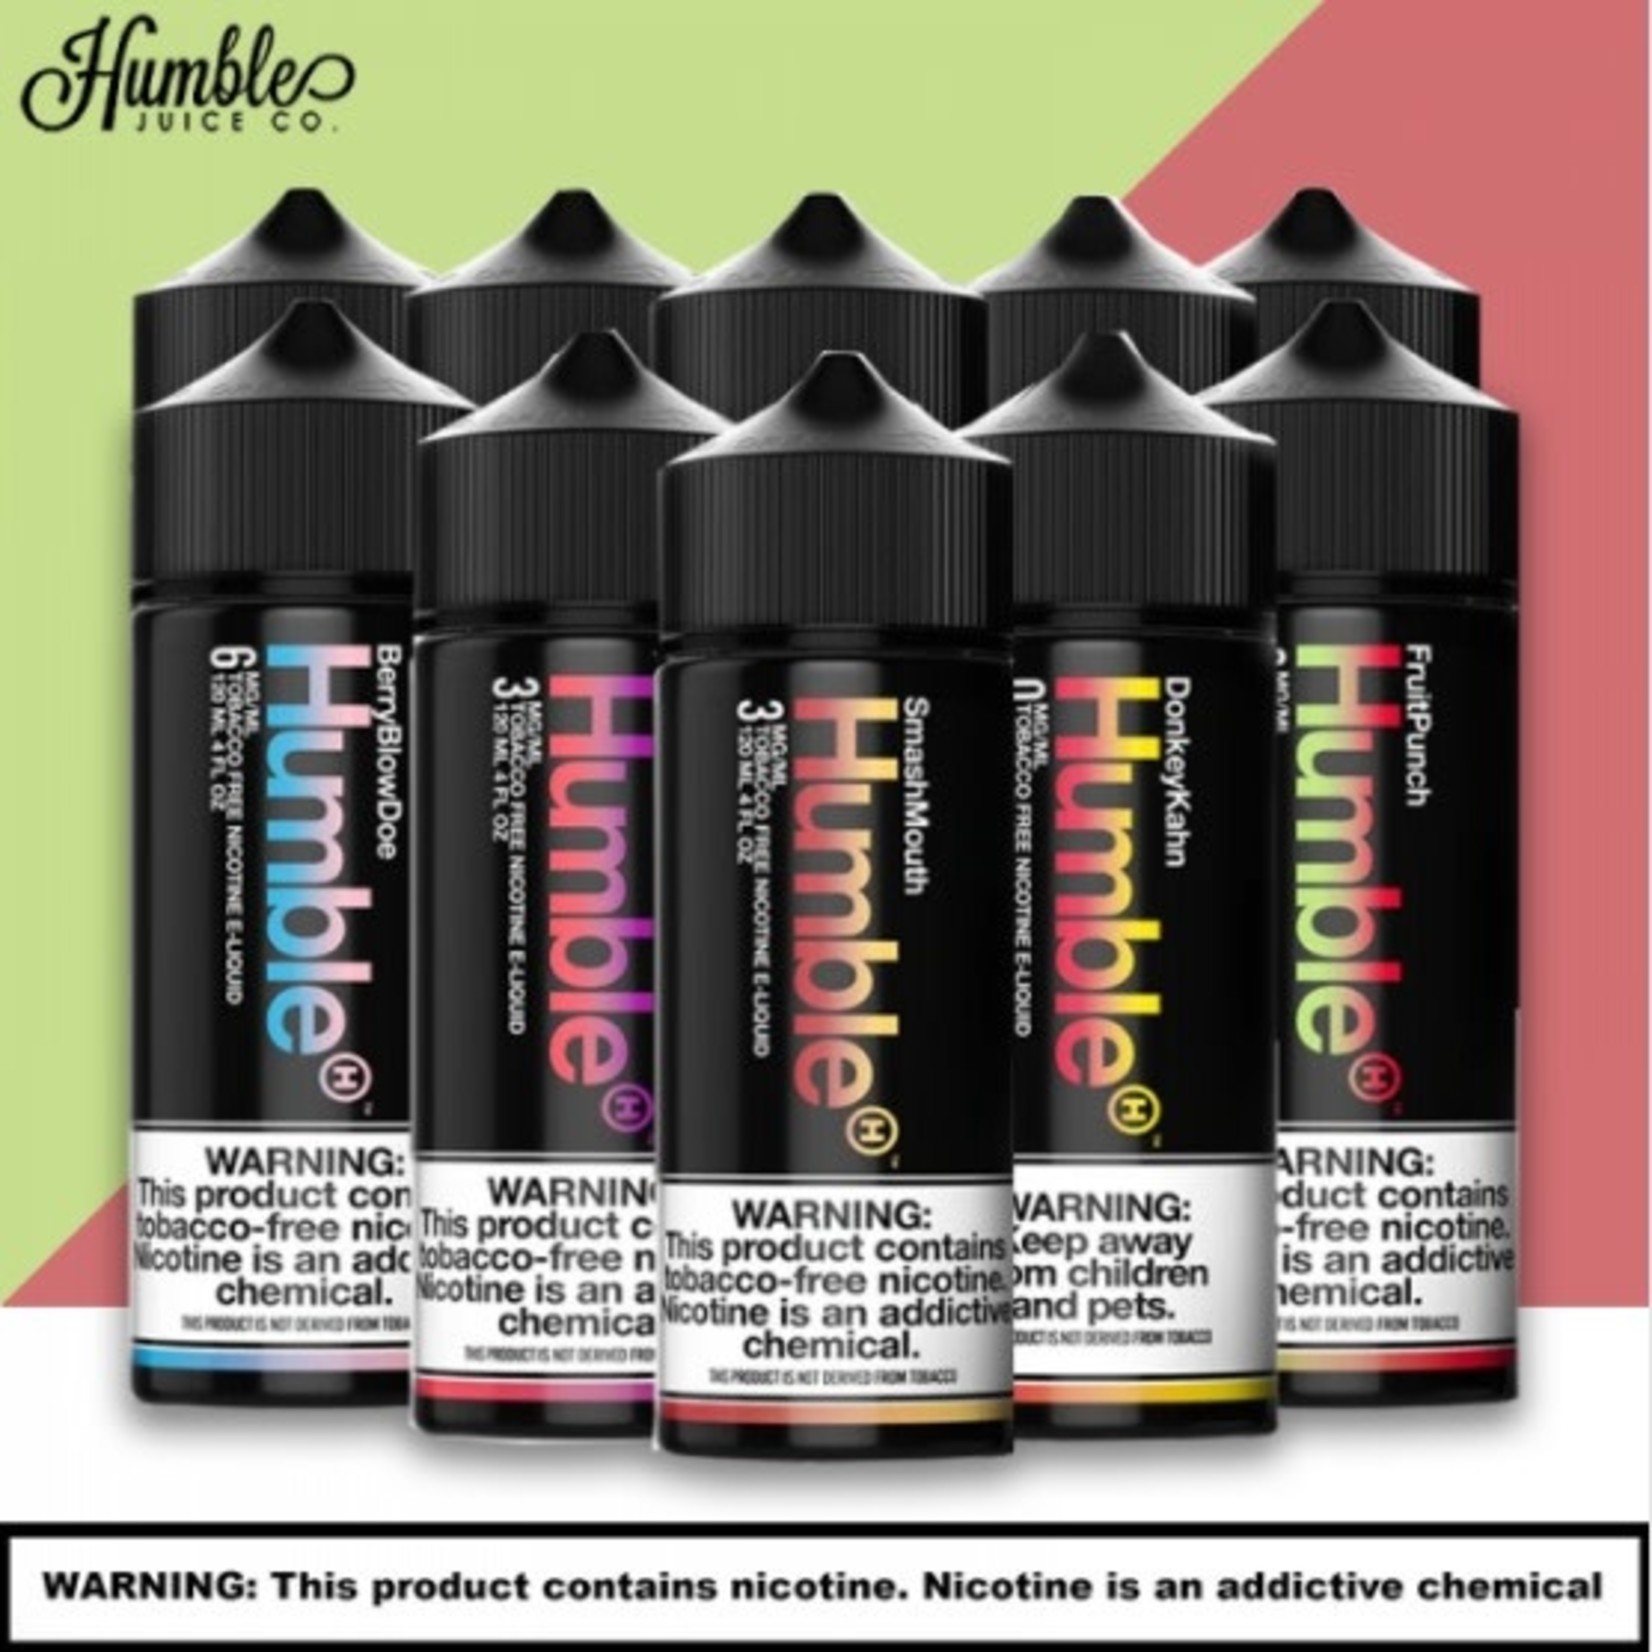 Humble Humble Juice Co. Tobacco Free Nicotine E-Liquid 120ML